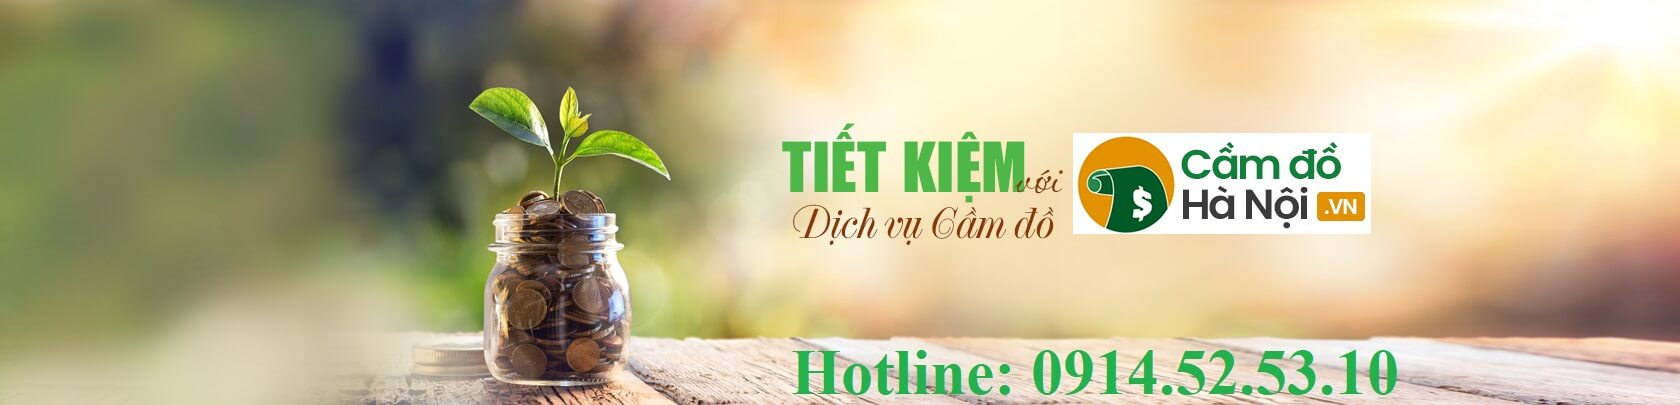 Camdohanoi website dịch vụ cầm đồ online chất lượng và uy tín hàng đầu Việt Nam